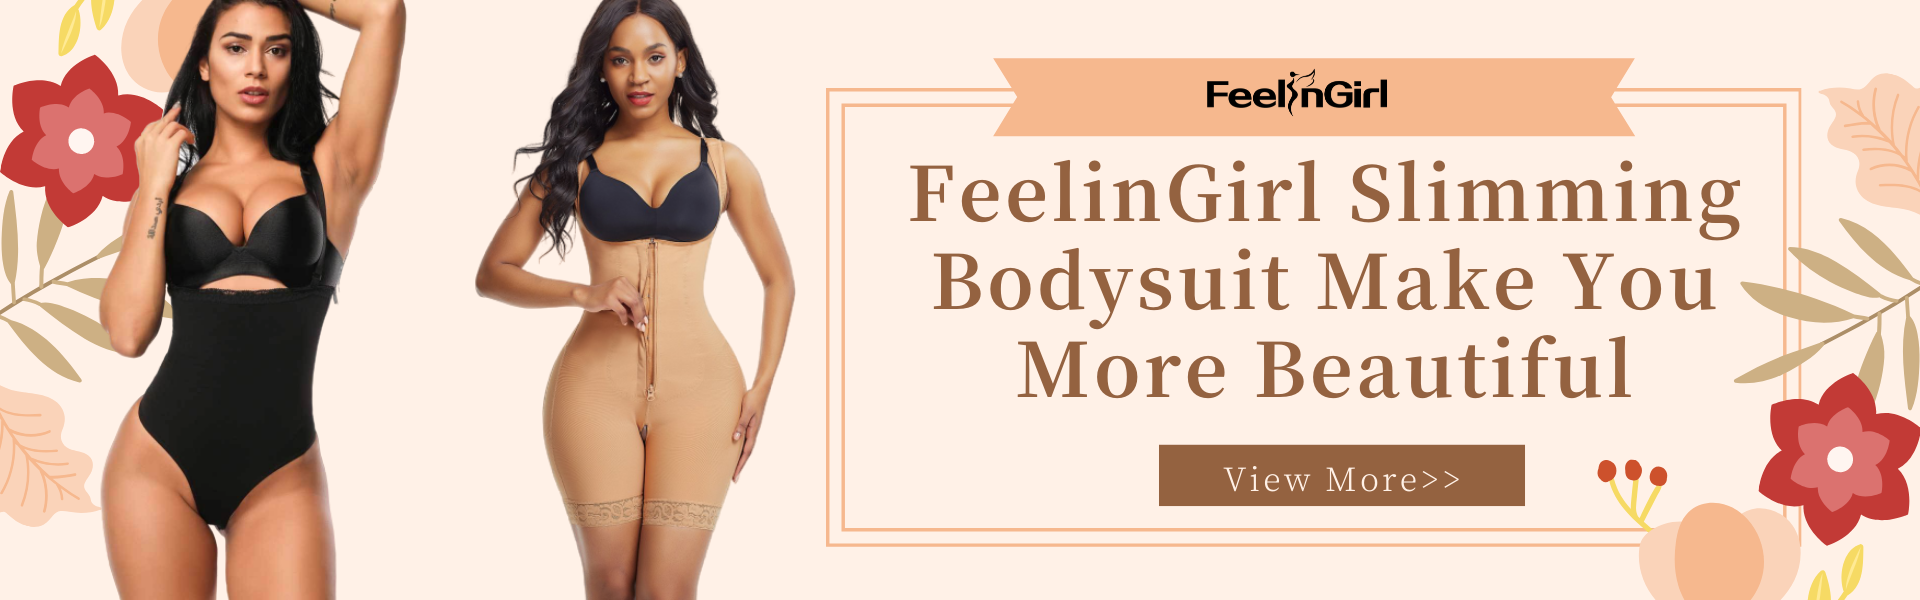 FeelinGirl Slimming Bodysuit Make You More Beautiful